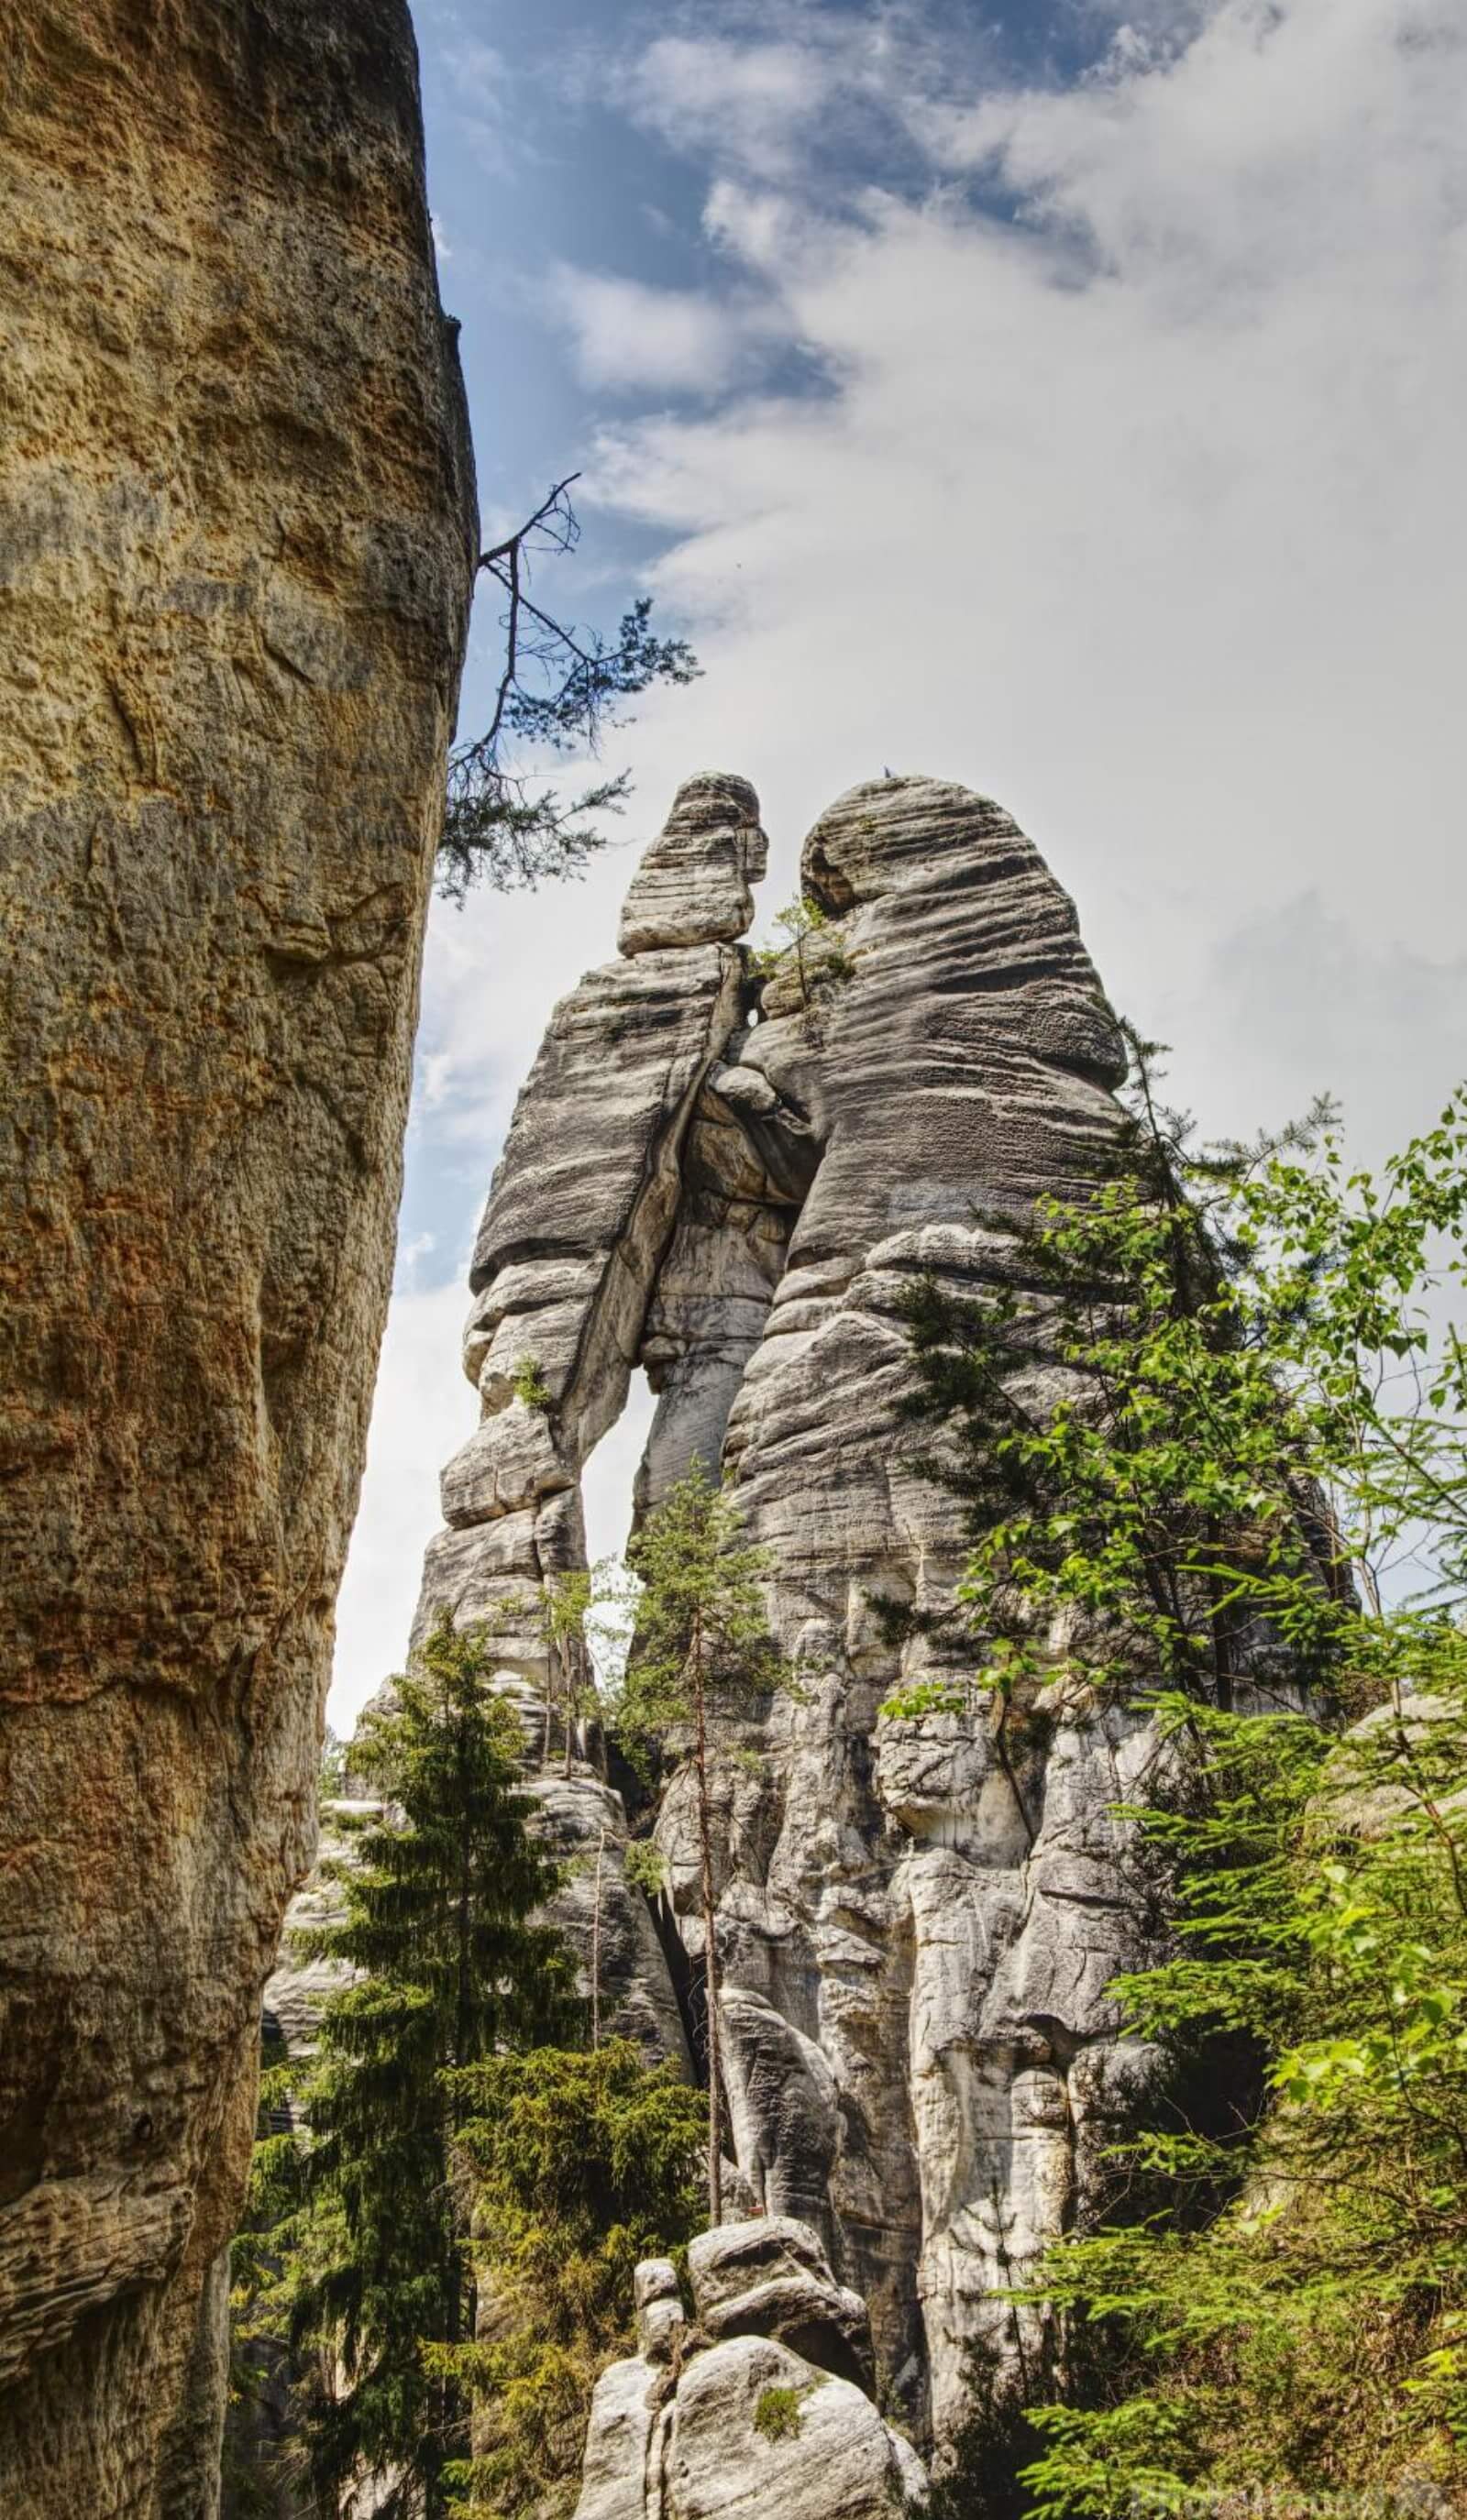 Image of Adršpach-Teplice Rocks by Krzysztof Kozlowski